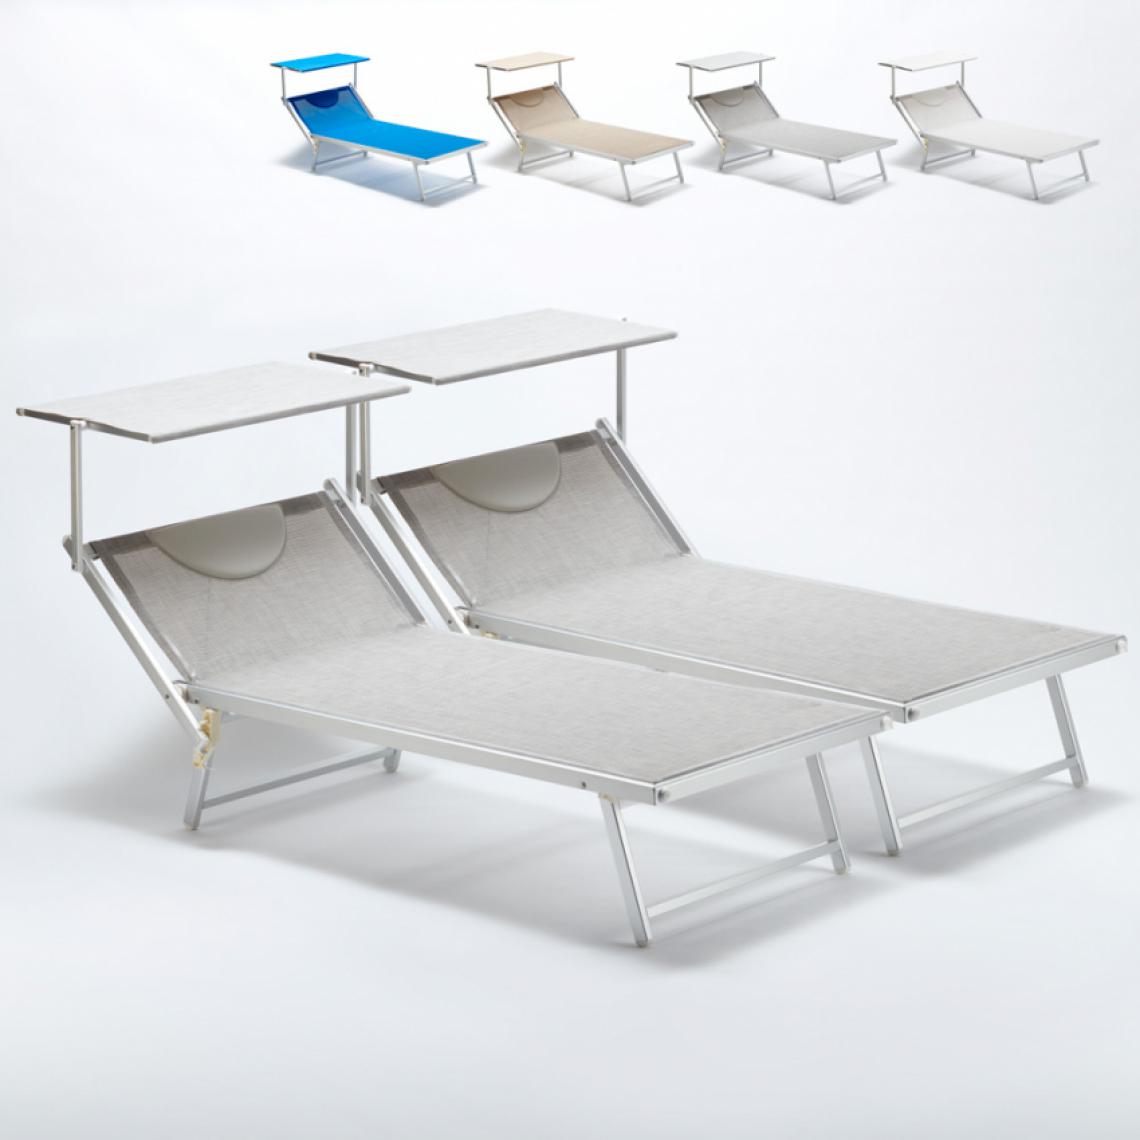 Beach And Garden Design - 2 Bain de soleil Xxl professionnels chaises longue piscine transat aluminium Italia Extralarge, Couleur: Gris - Transats, chaises longues